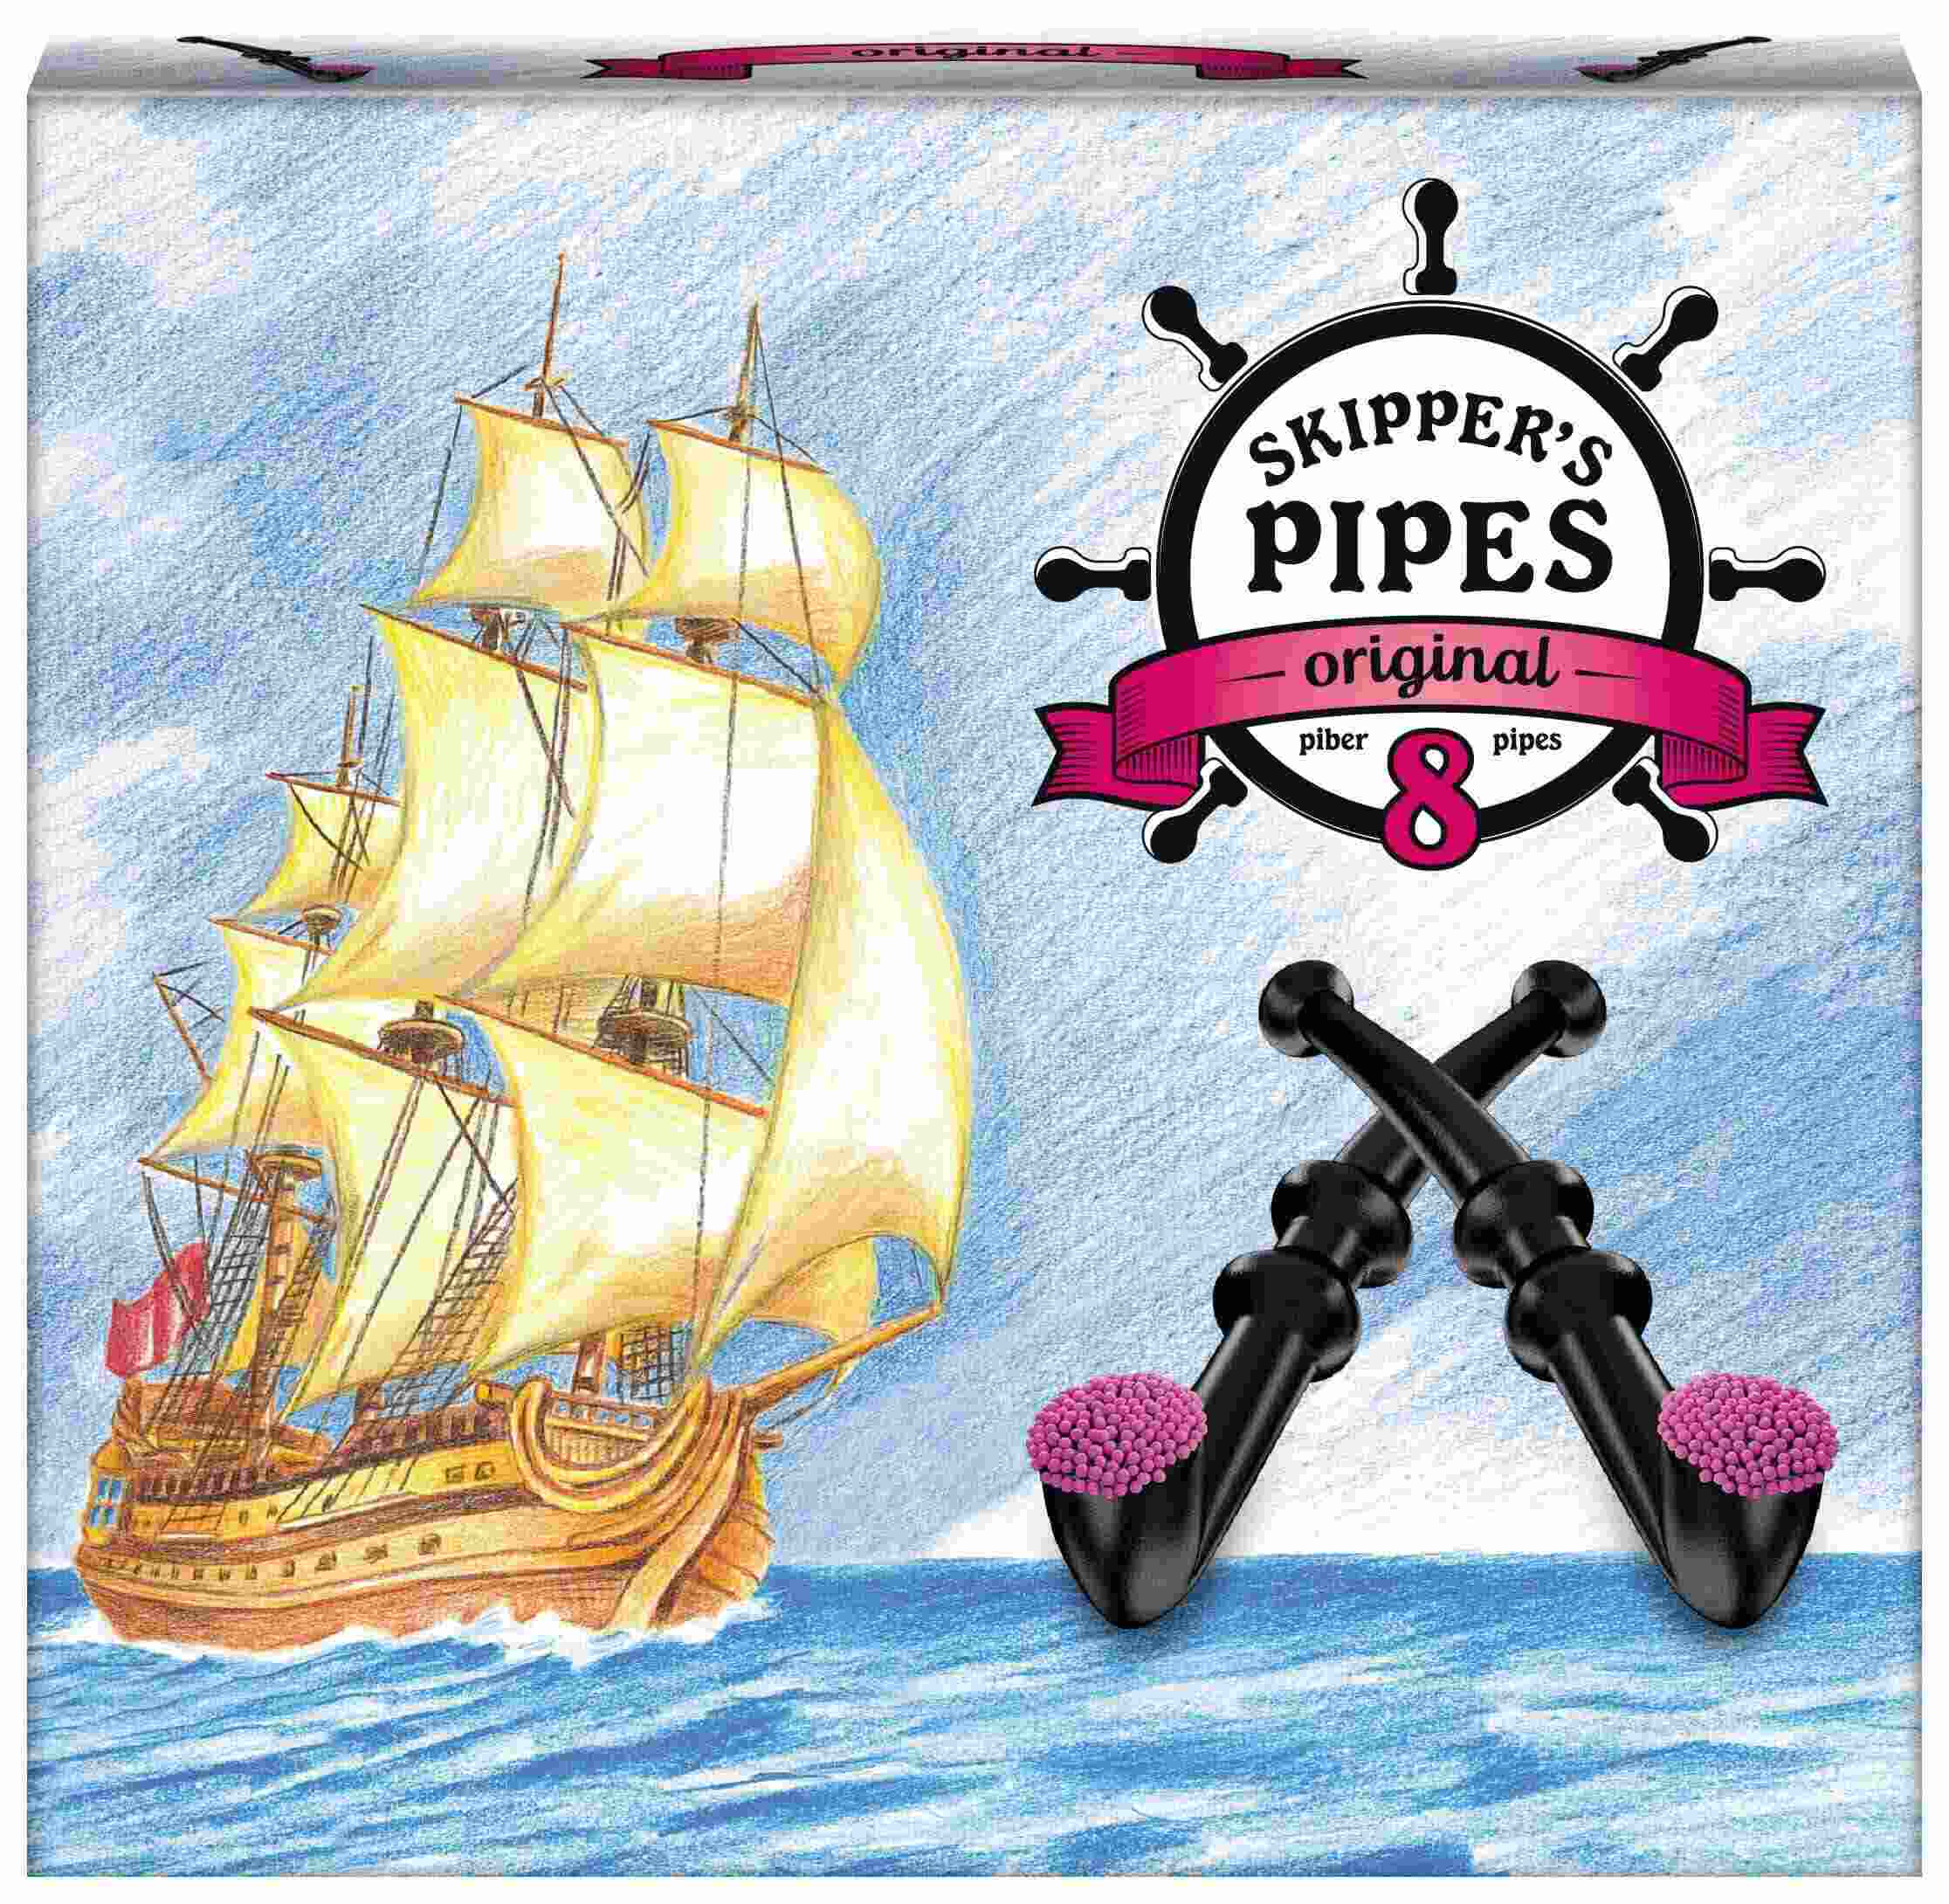 Skippers' pipe